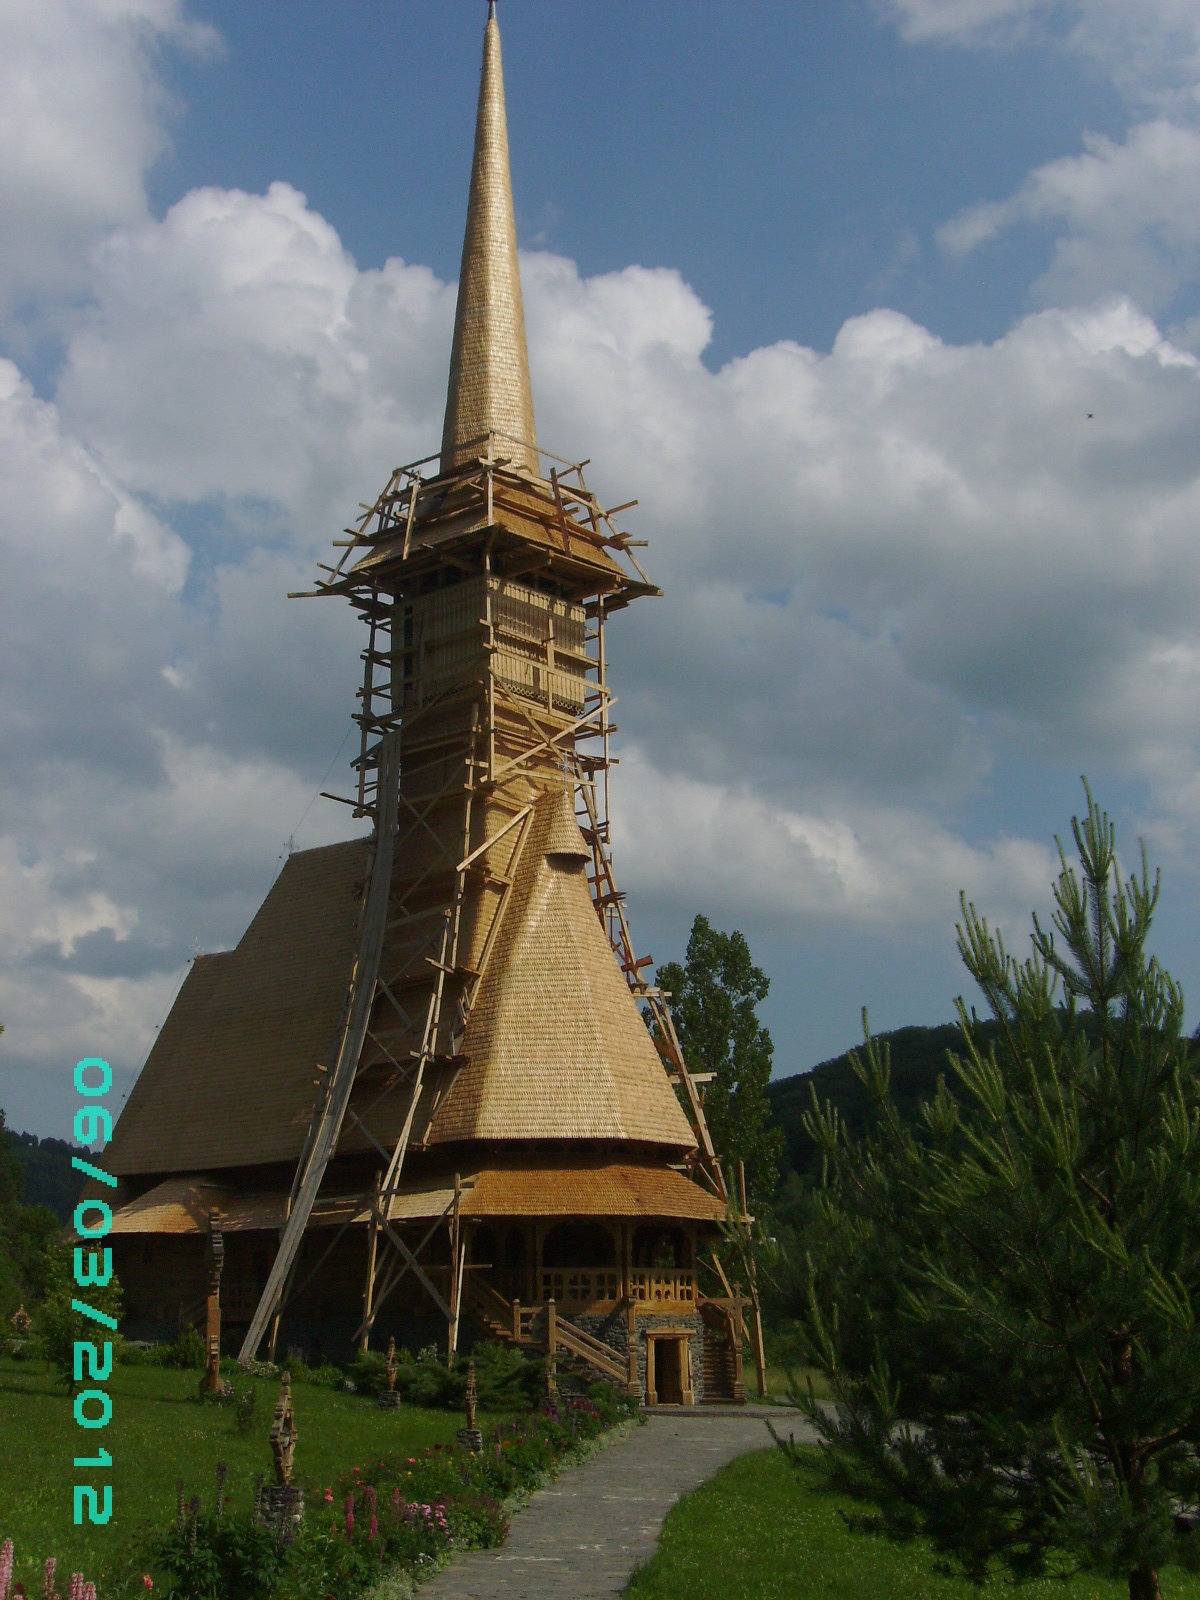 Hai hui prin Maramureş (6) Mănǎstirea Bârsana